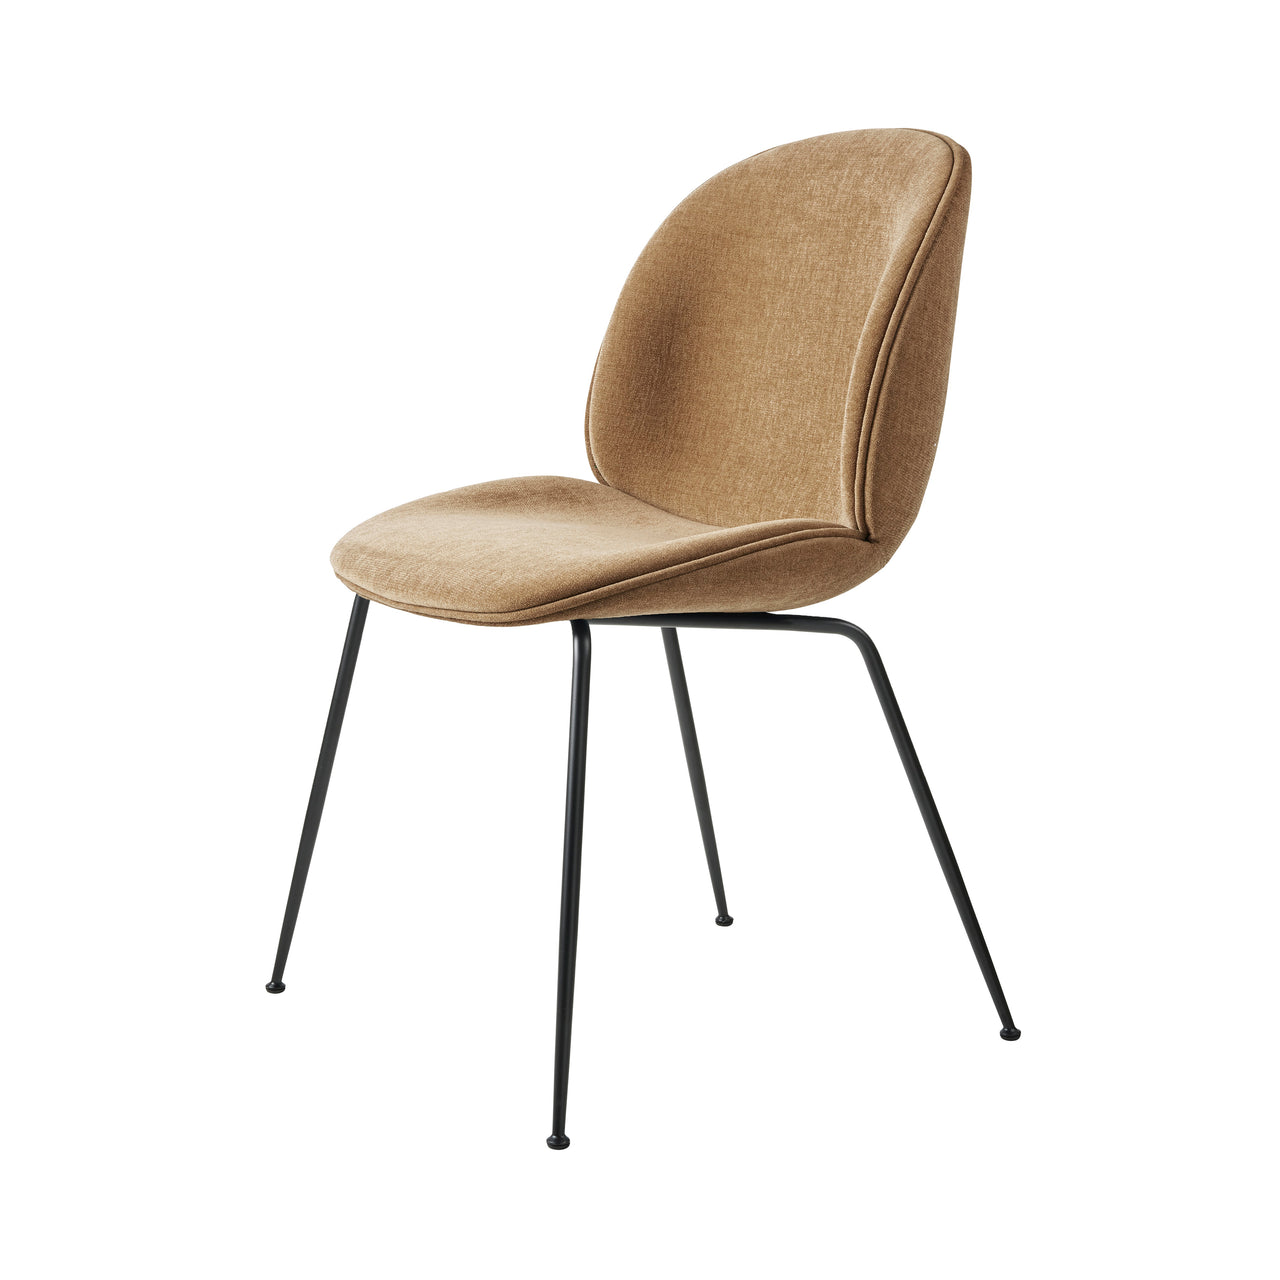 Beetle Dining Chair: Conic Base + Full Upholstery + Black Matt